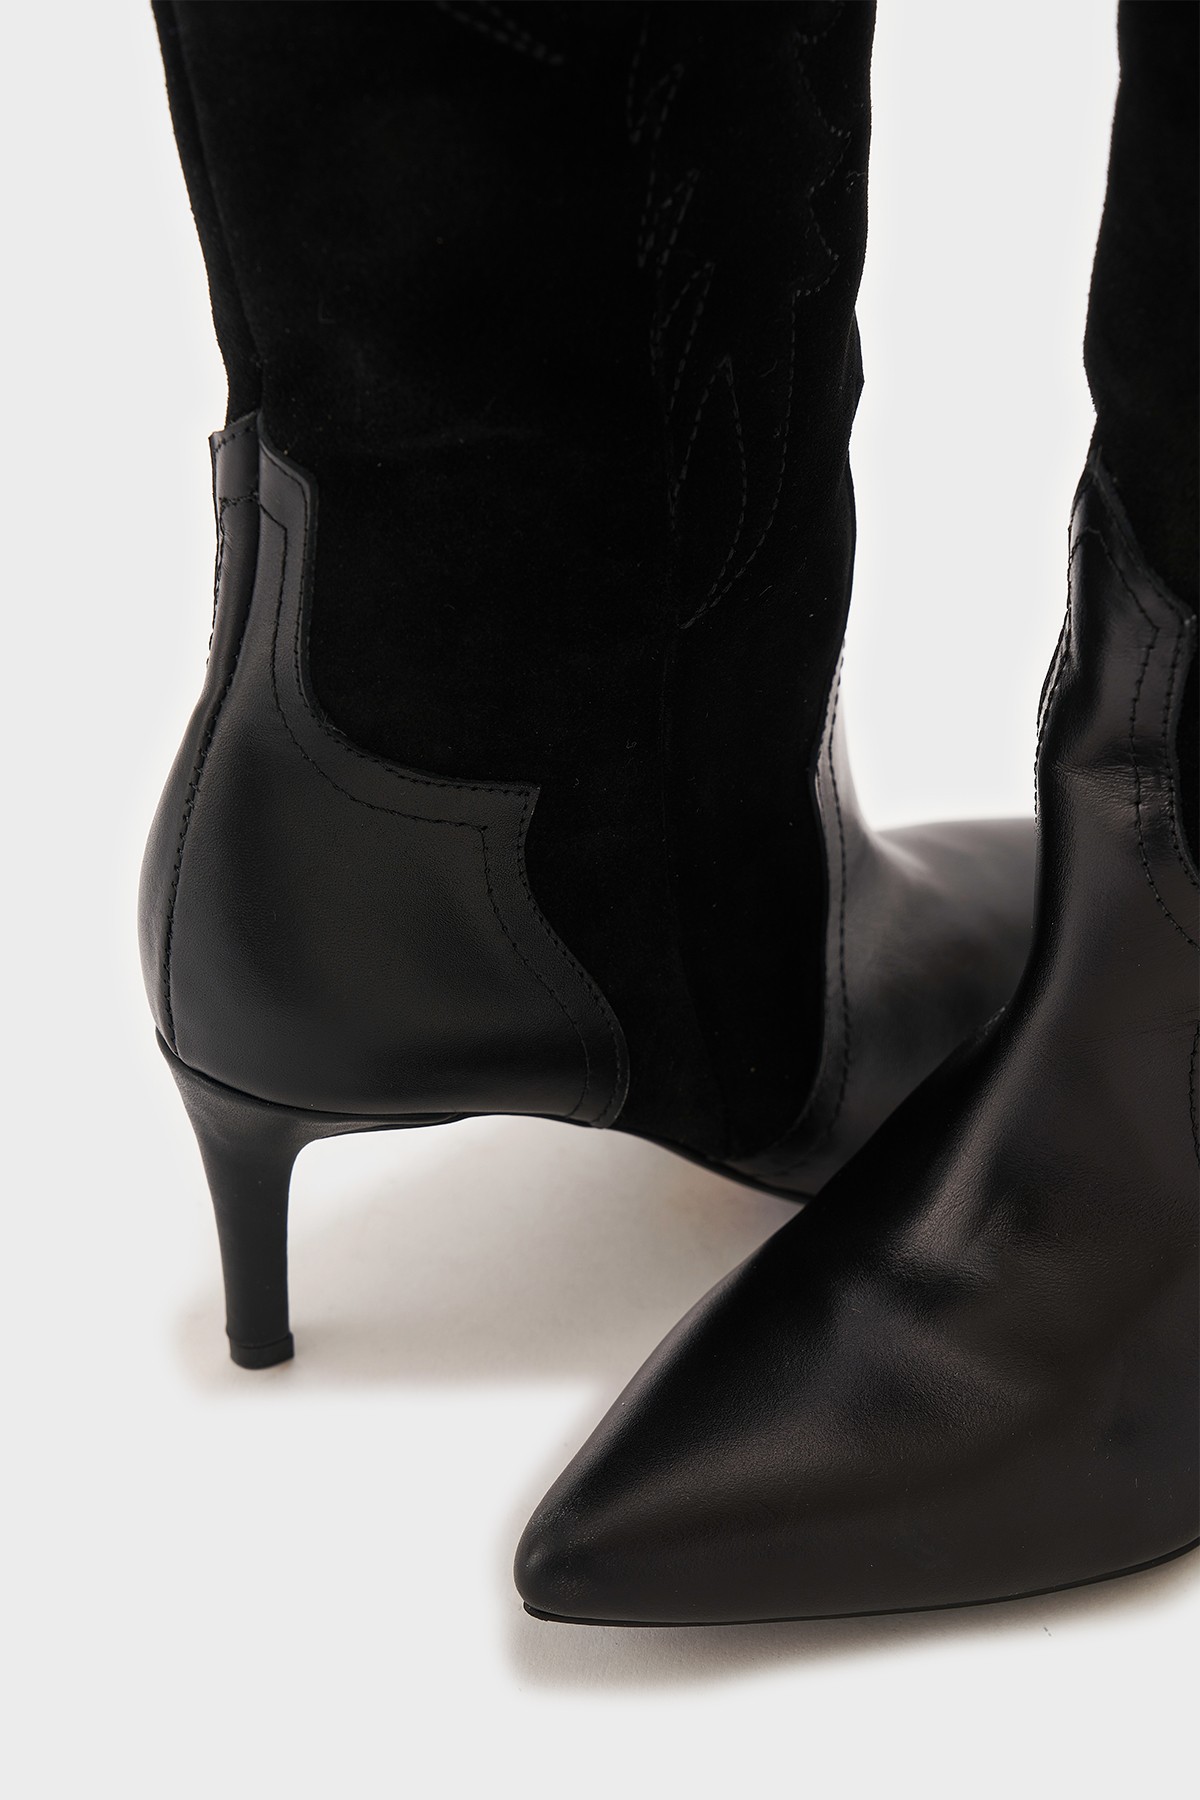 Alina Hakiki Deri Kadın Çizme - Siyah